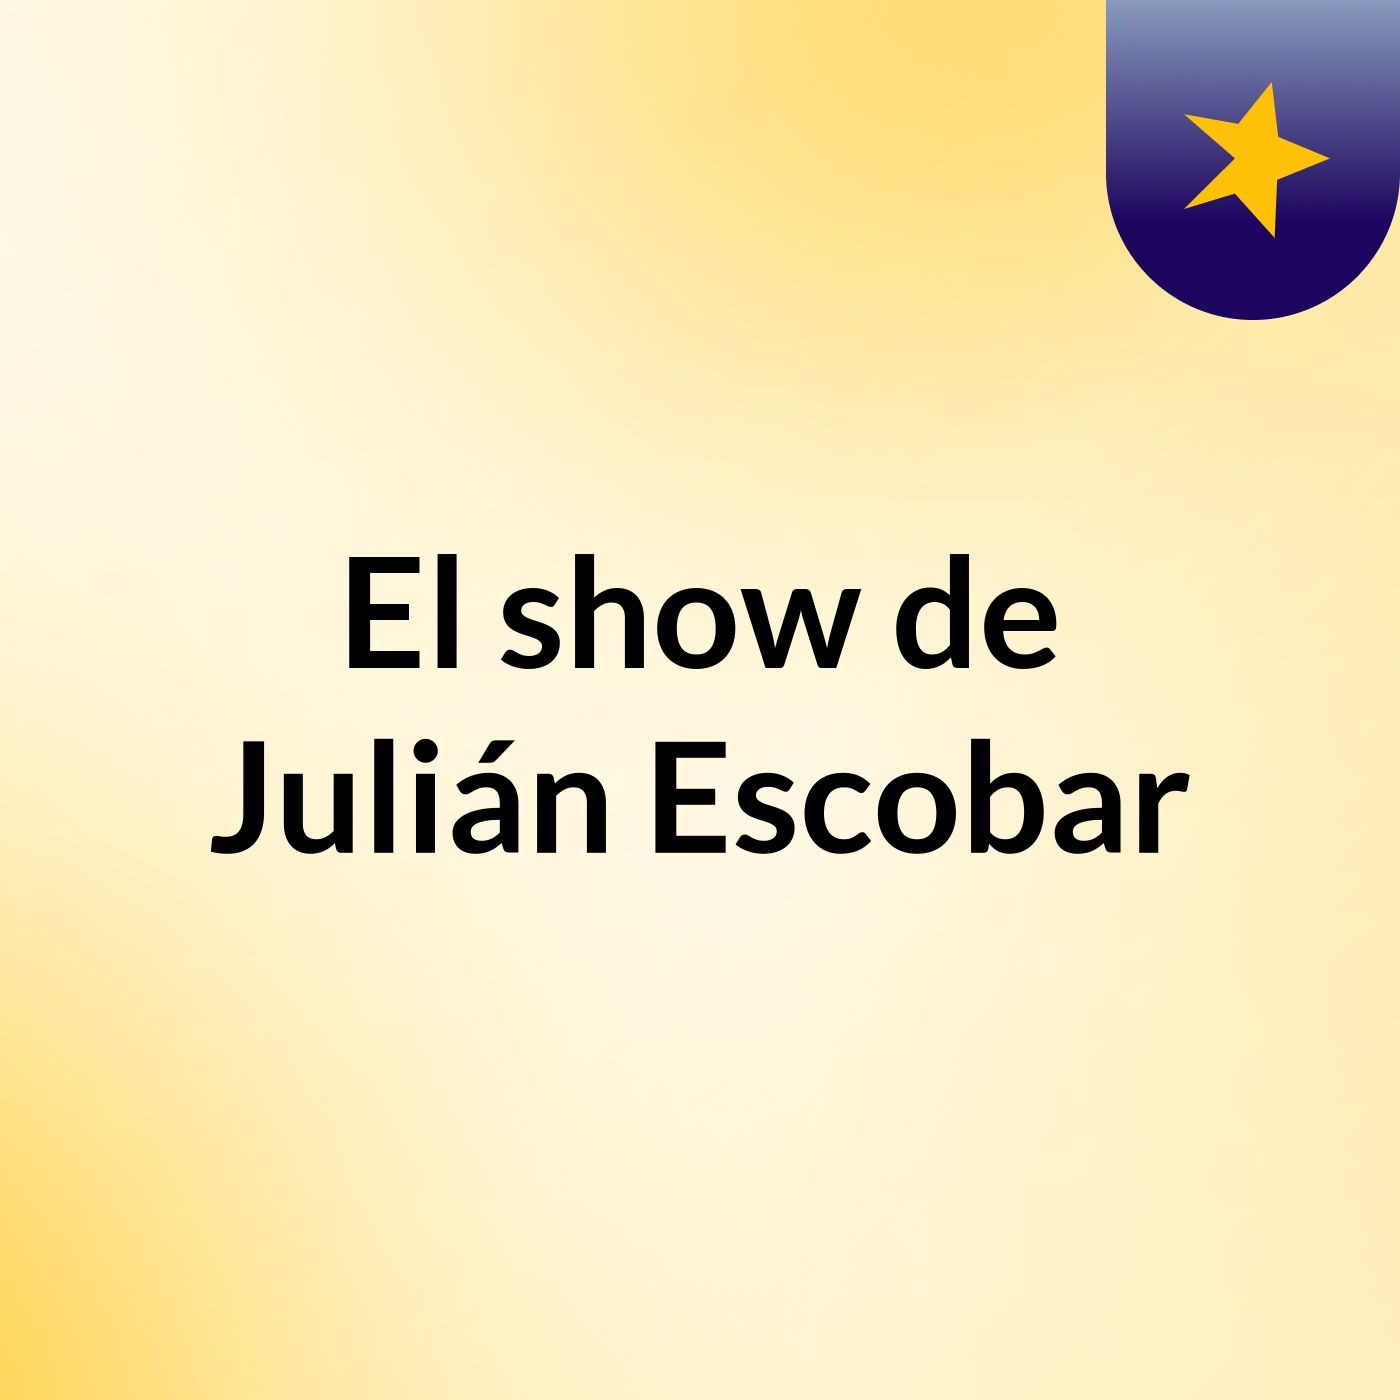 Episodio 3 - El show de Julián Escobar